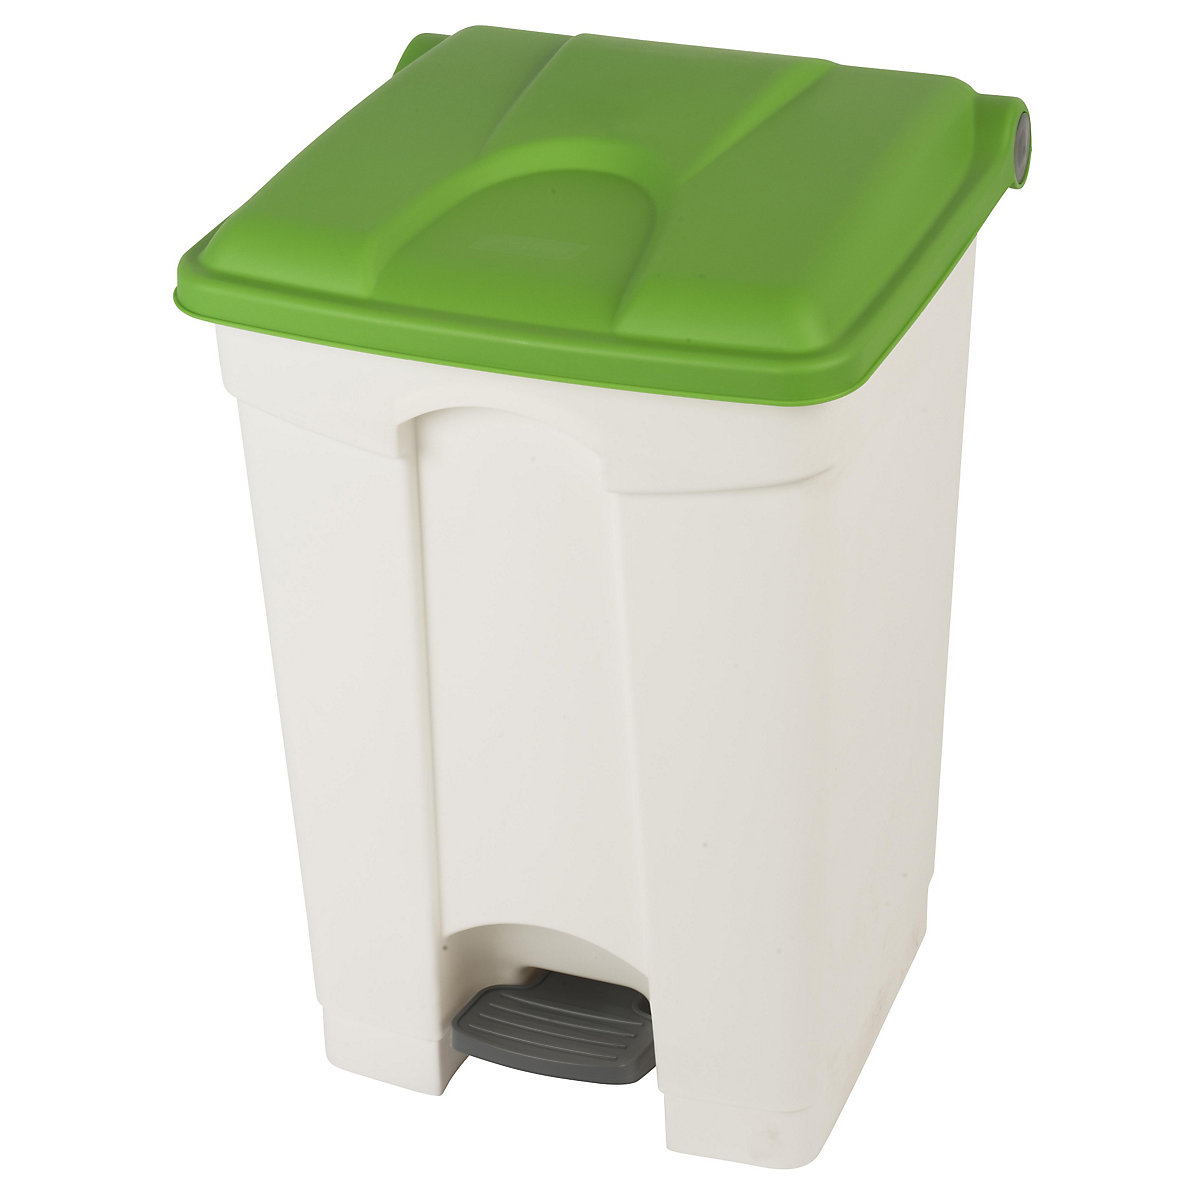 Spremnik za otpad s papučicom, volumen 45 l, ŠxVxD 410 x 600 x 400 mm, u bijeloj boji, poklopac u zelenoj boji-10